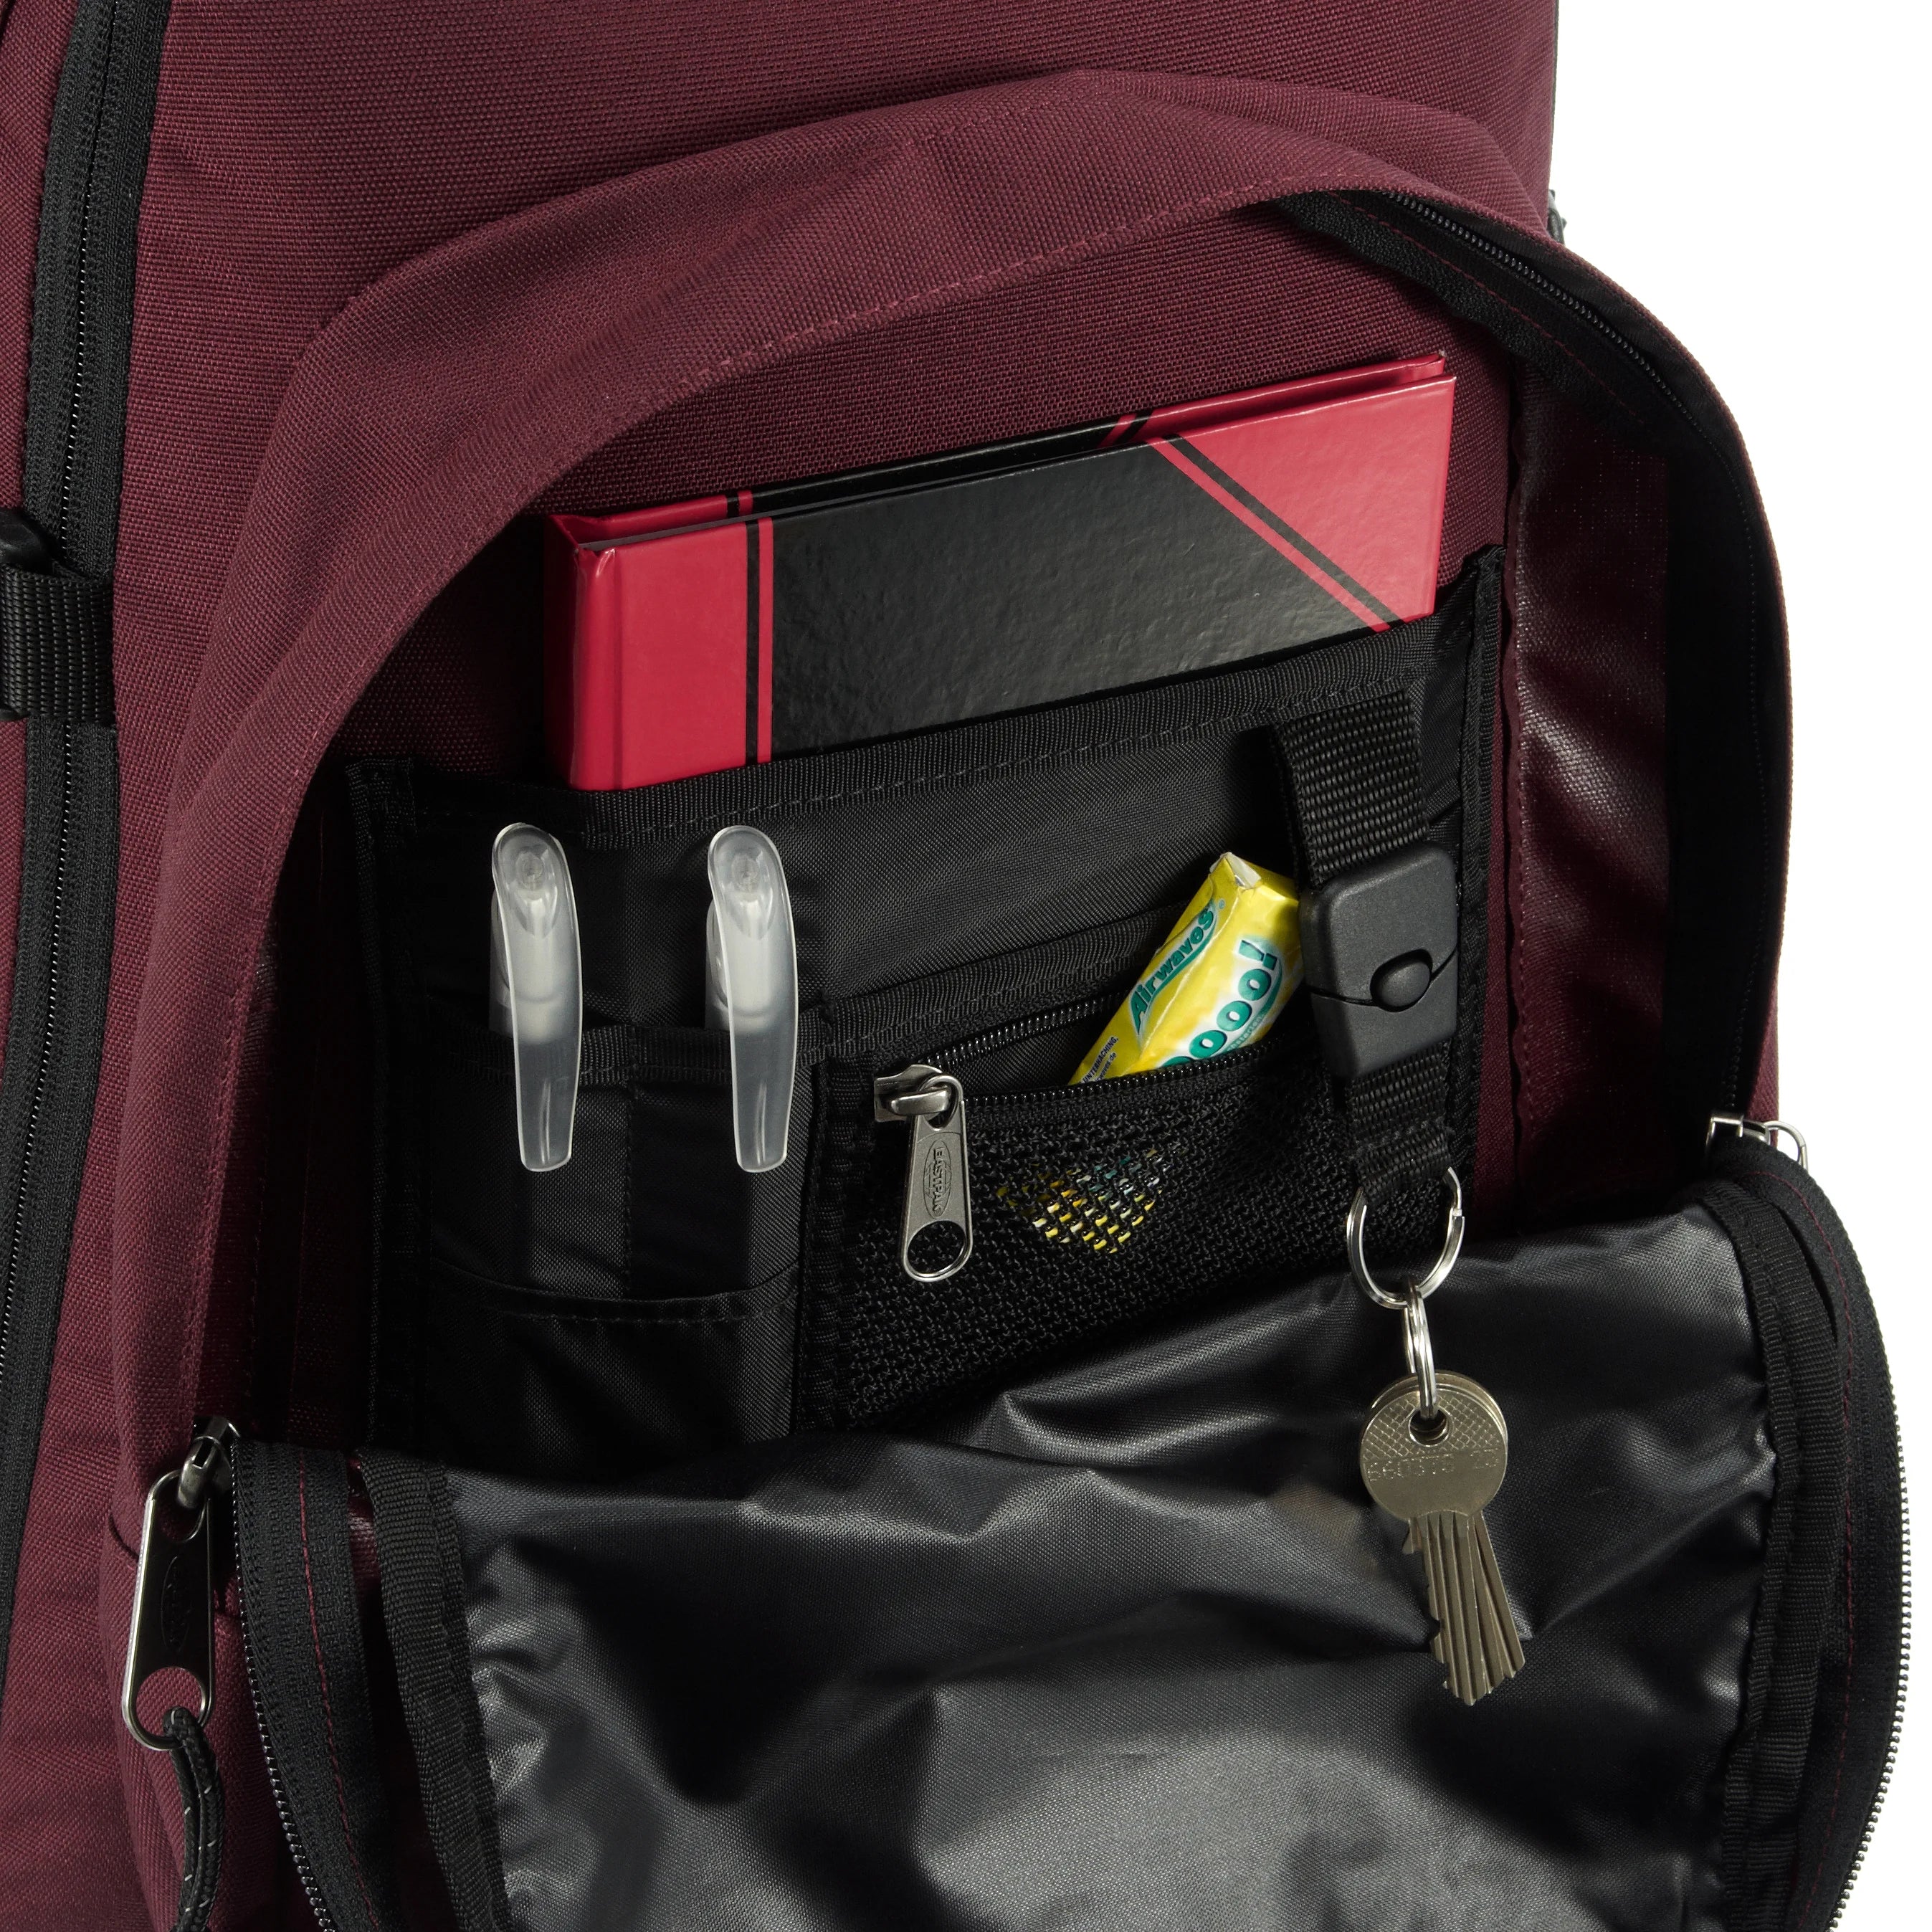 Eastpak Authentic Re-Check Tutor sac à dos avec compartiment ordinateur 48 cm - denim noir